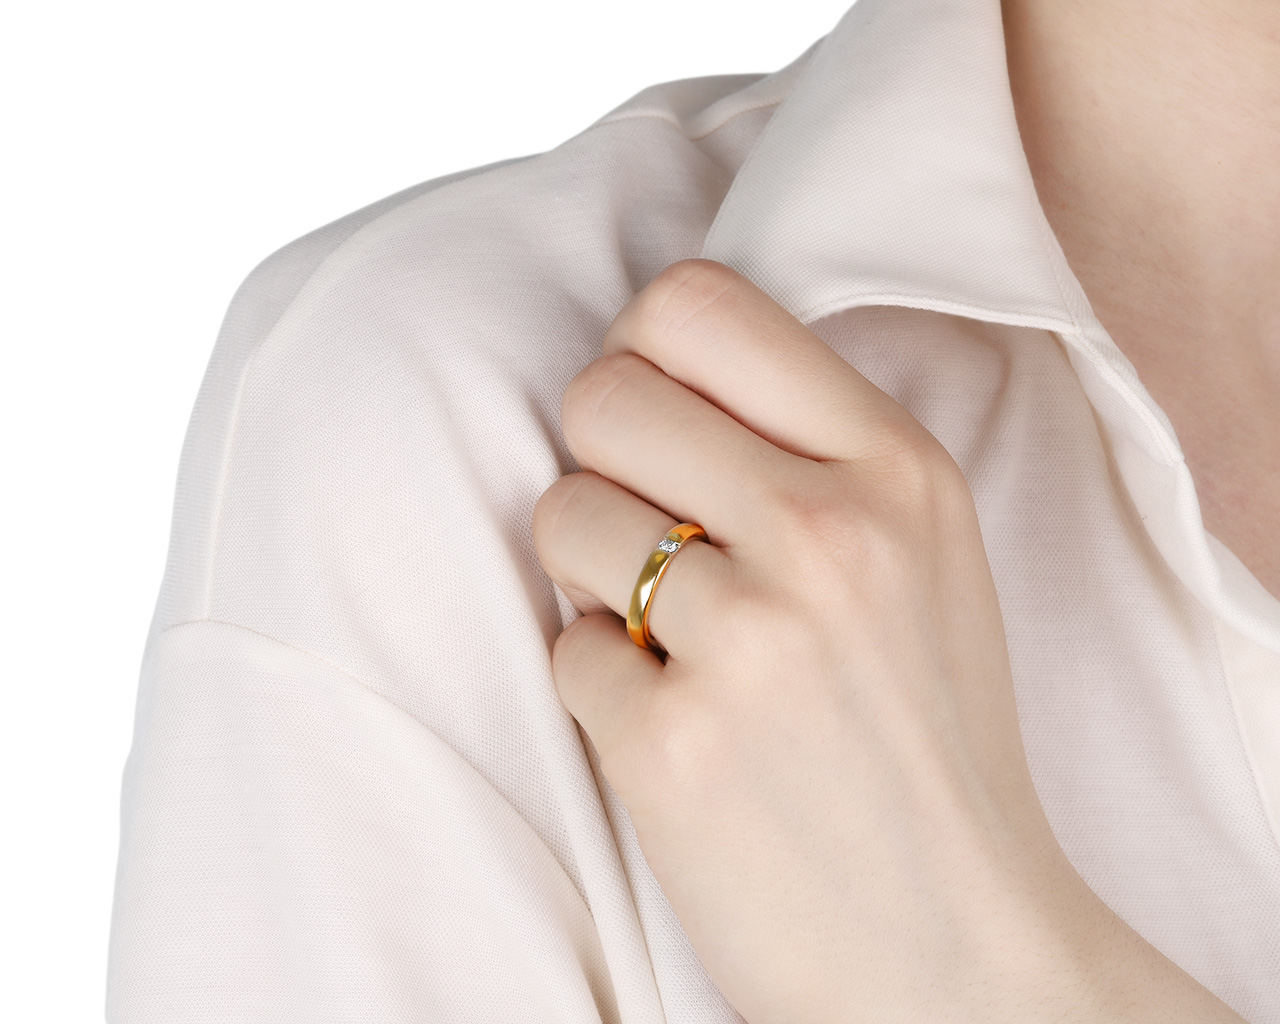 Оригинальное золотое кольцо с бриллиантом 0.07ct Damiani Veramore